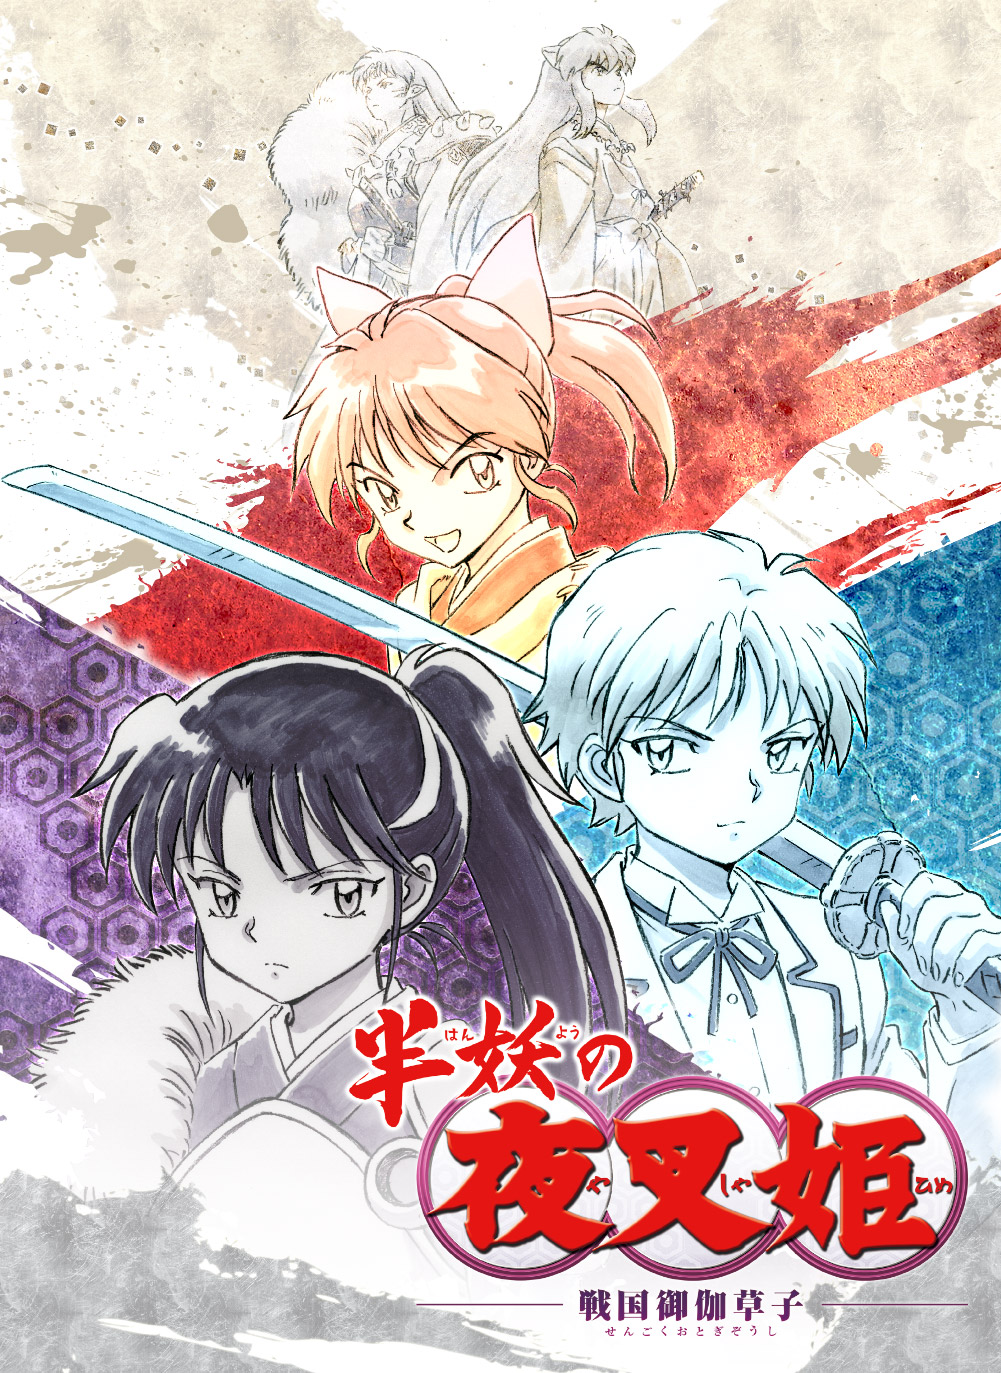 Inuyasha hanyo no yashahime 2, capítulo 14 online sub esopañol: dónde ver  el lanzamiento del nuevo capítulo de la serie, Anime, Manga, México, Animes